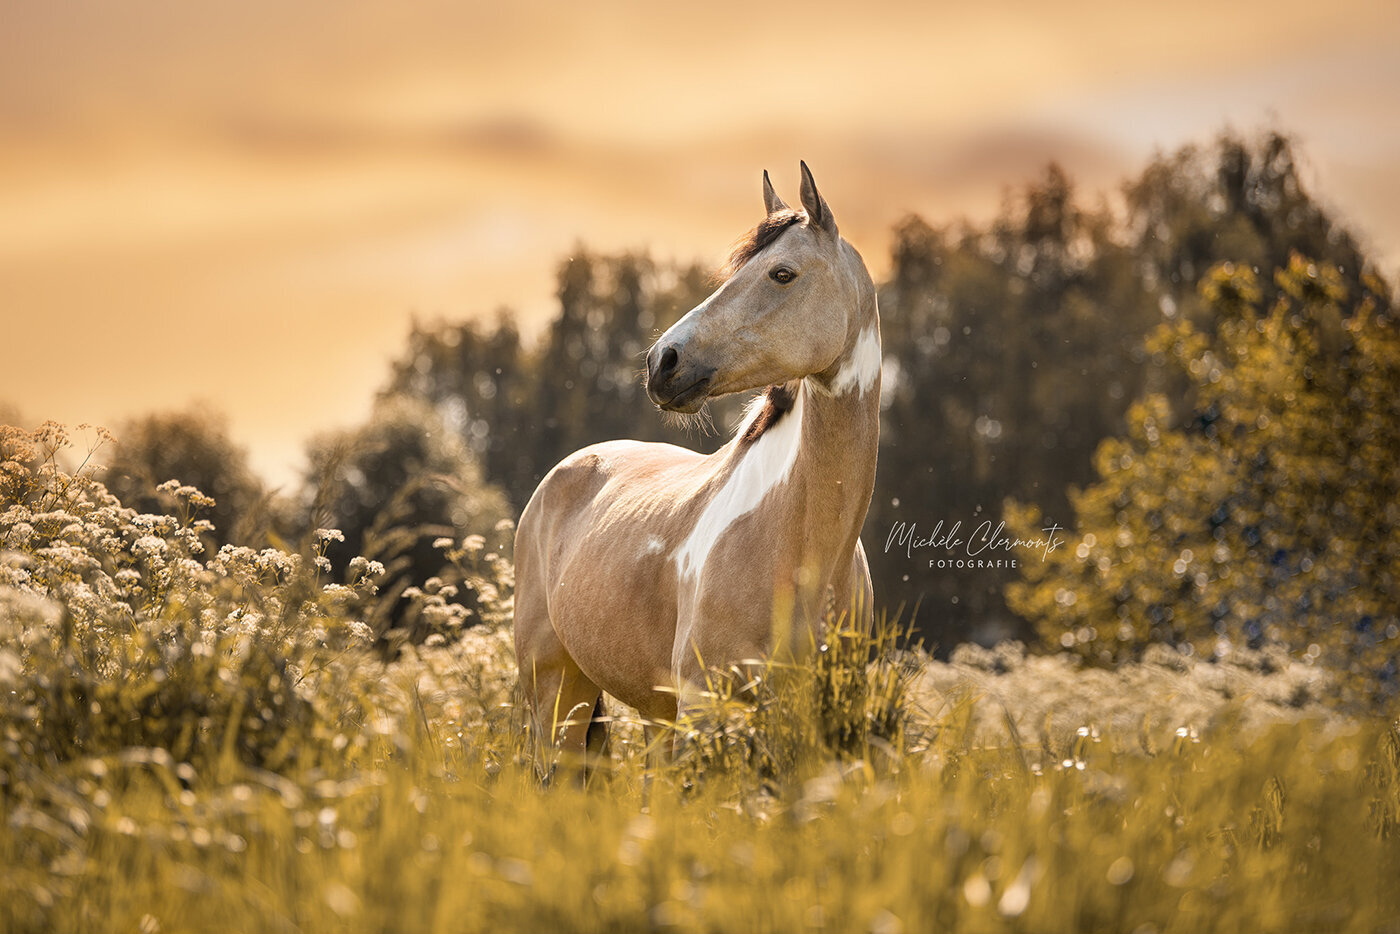 DSC_5867-2-paardenfotografie-michèle clermonts fotografie-low